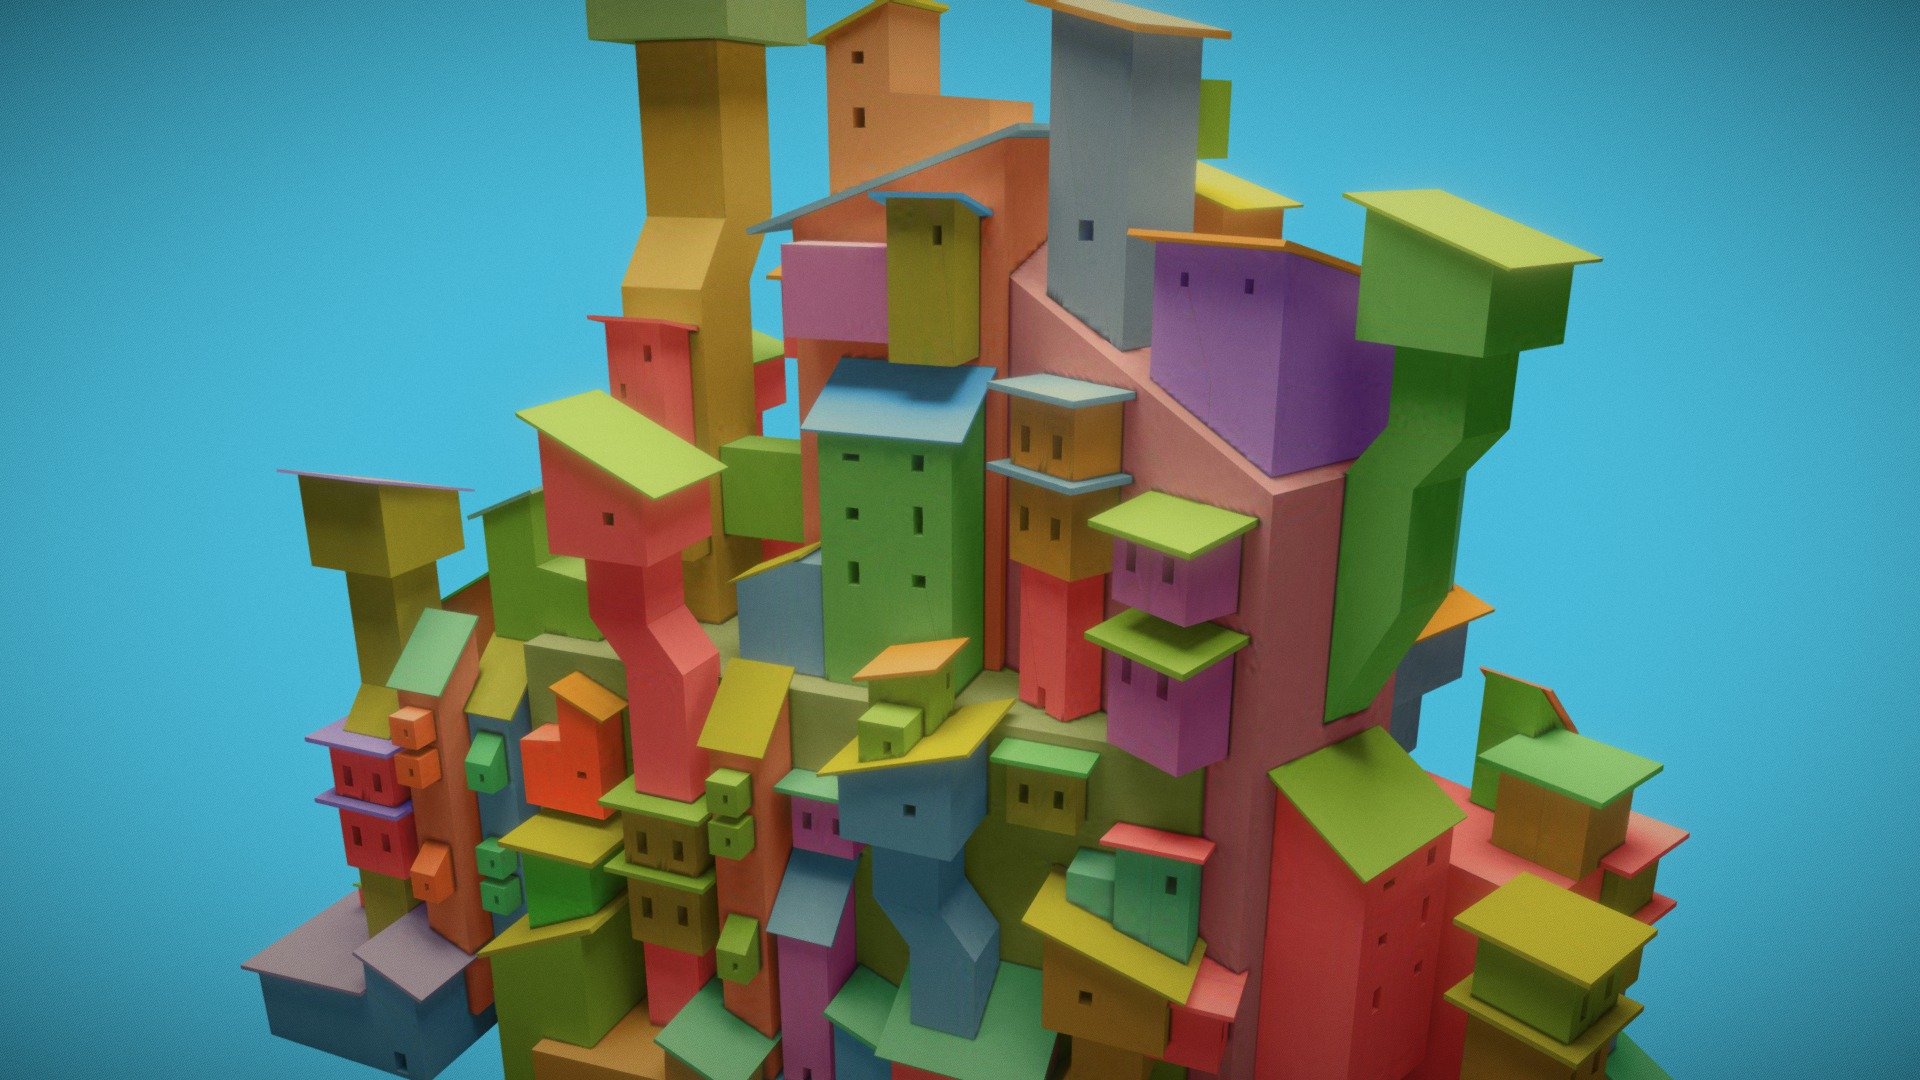 3D doodle with Blender - Polygon City - 3D model by Chris Davis (@fuqzhet) 3d model